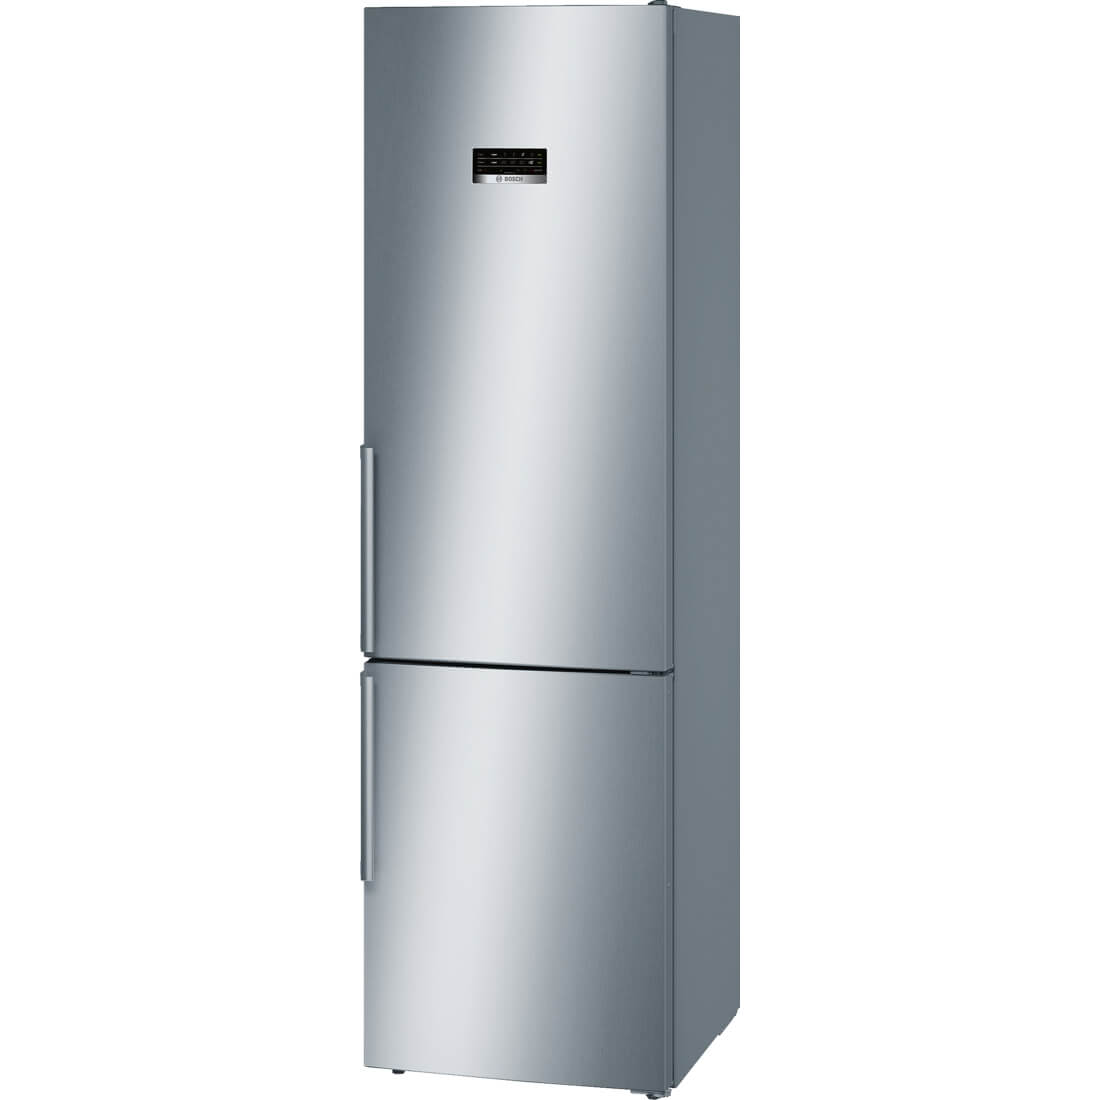  Combina frigorifica Bosch KGN39XL35, No Frost, 366 l, Clasa A++ 